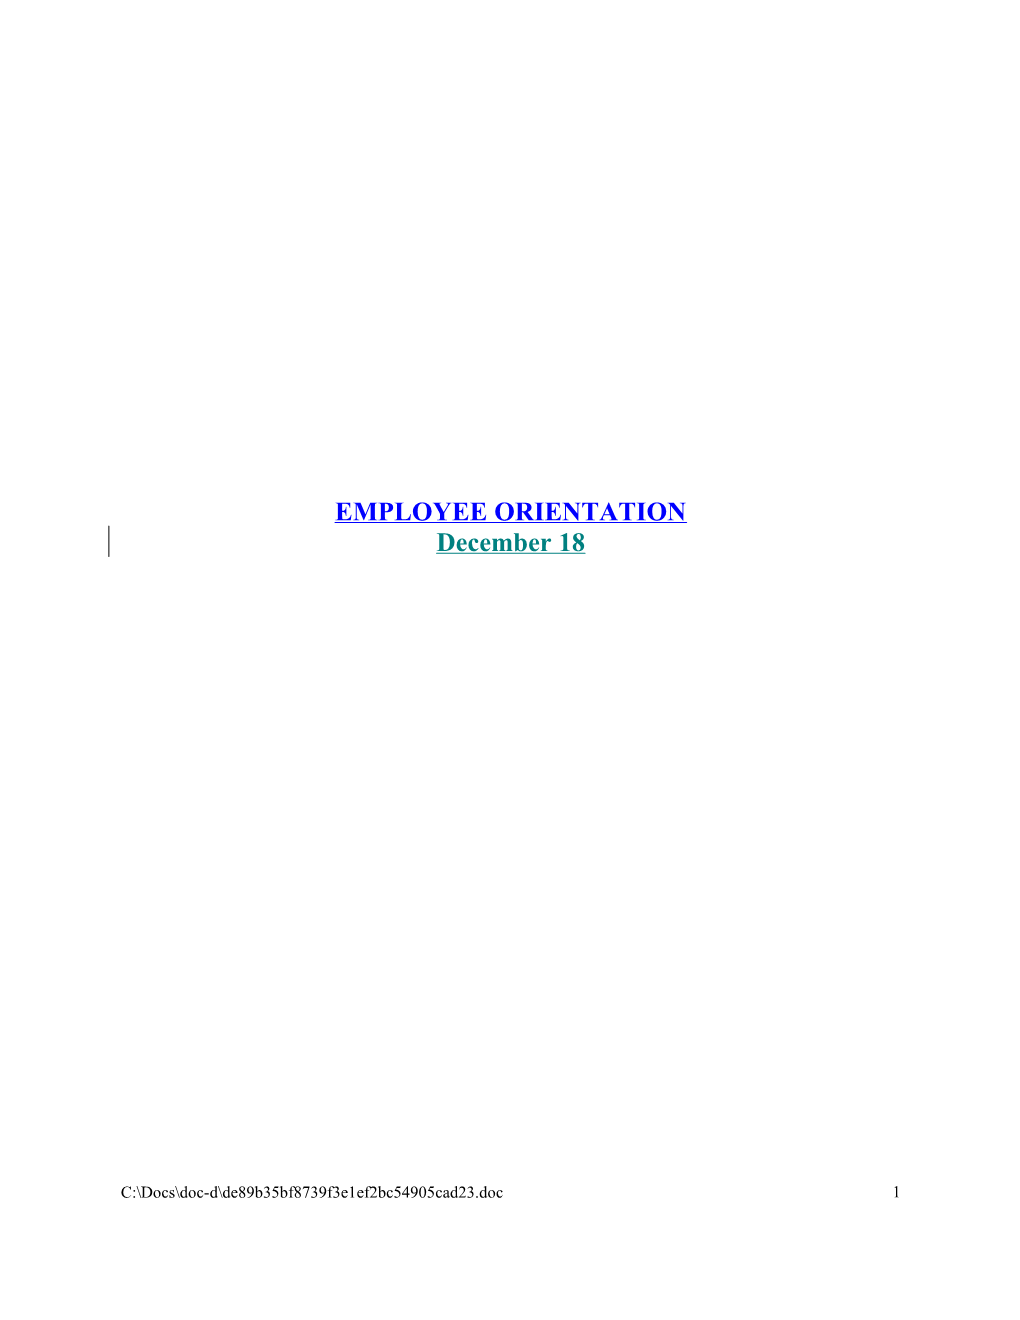 Employee Orientation Binder